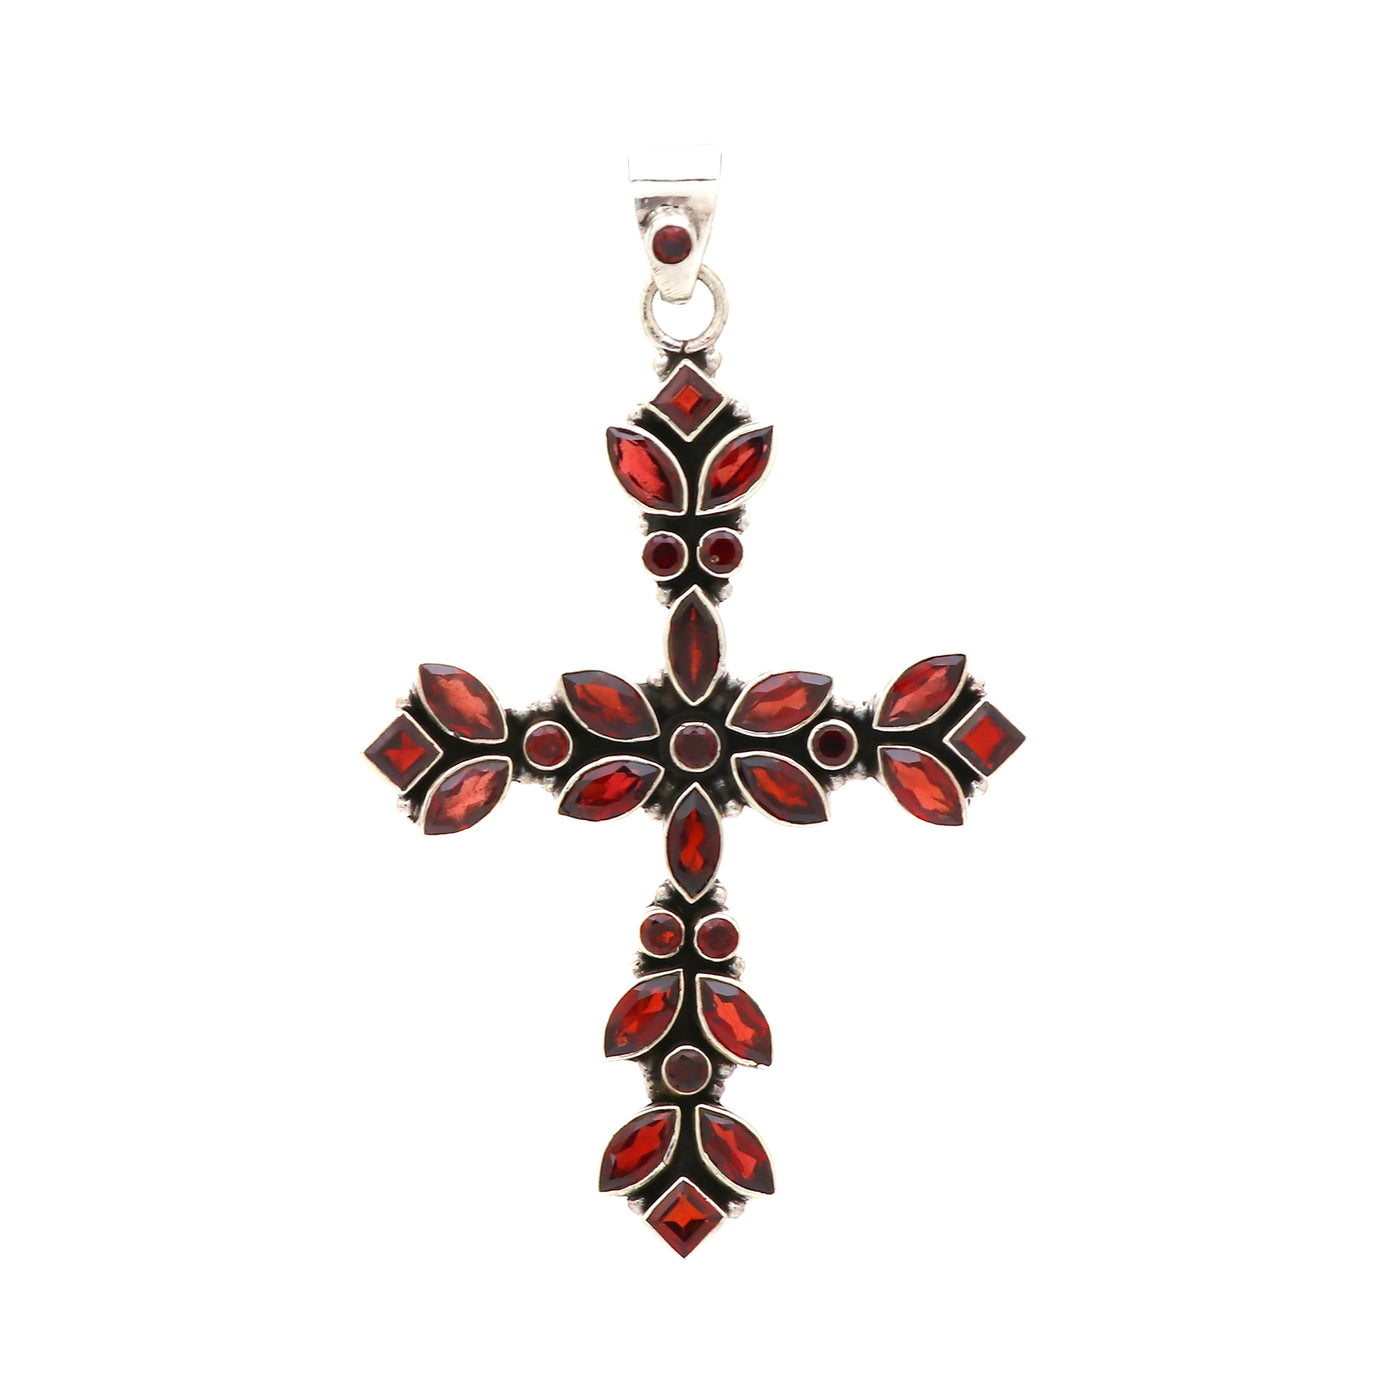 Designer Garnet Stone Cross Pendant